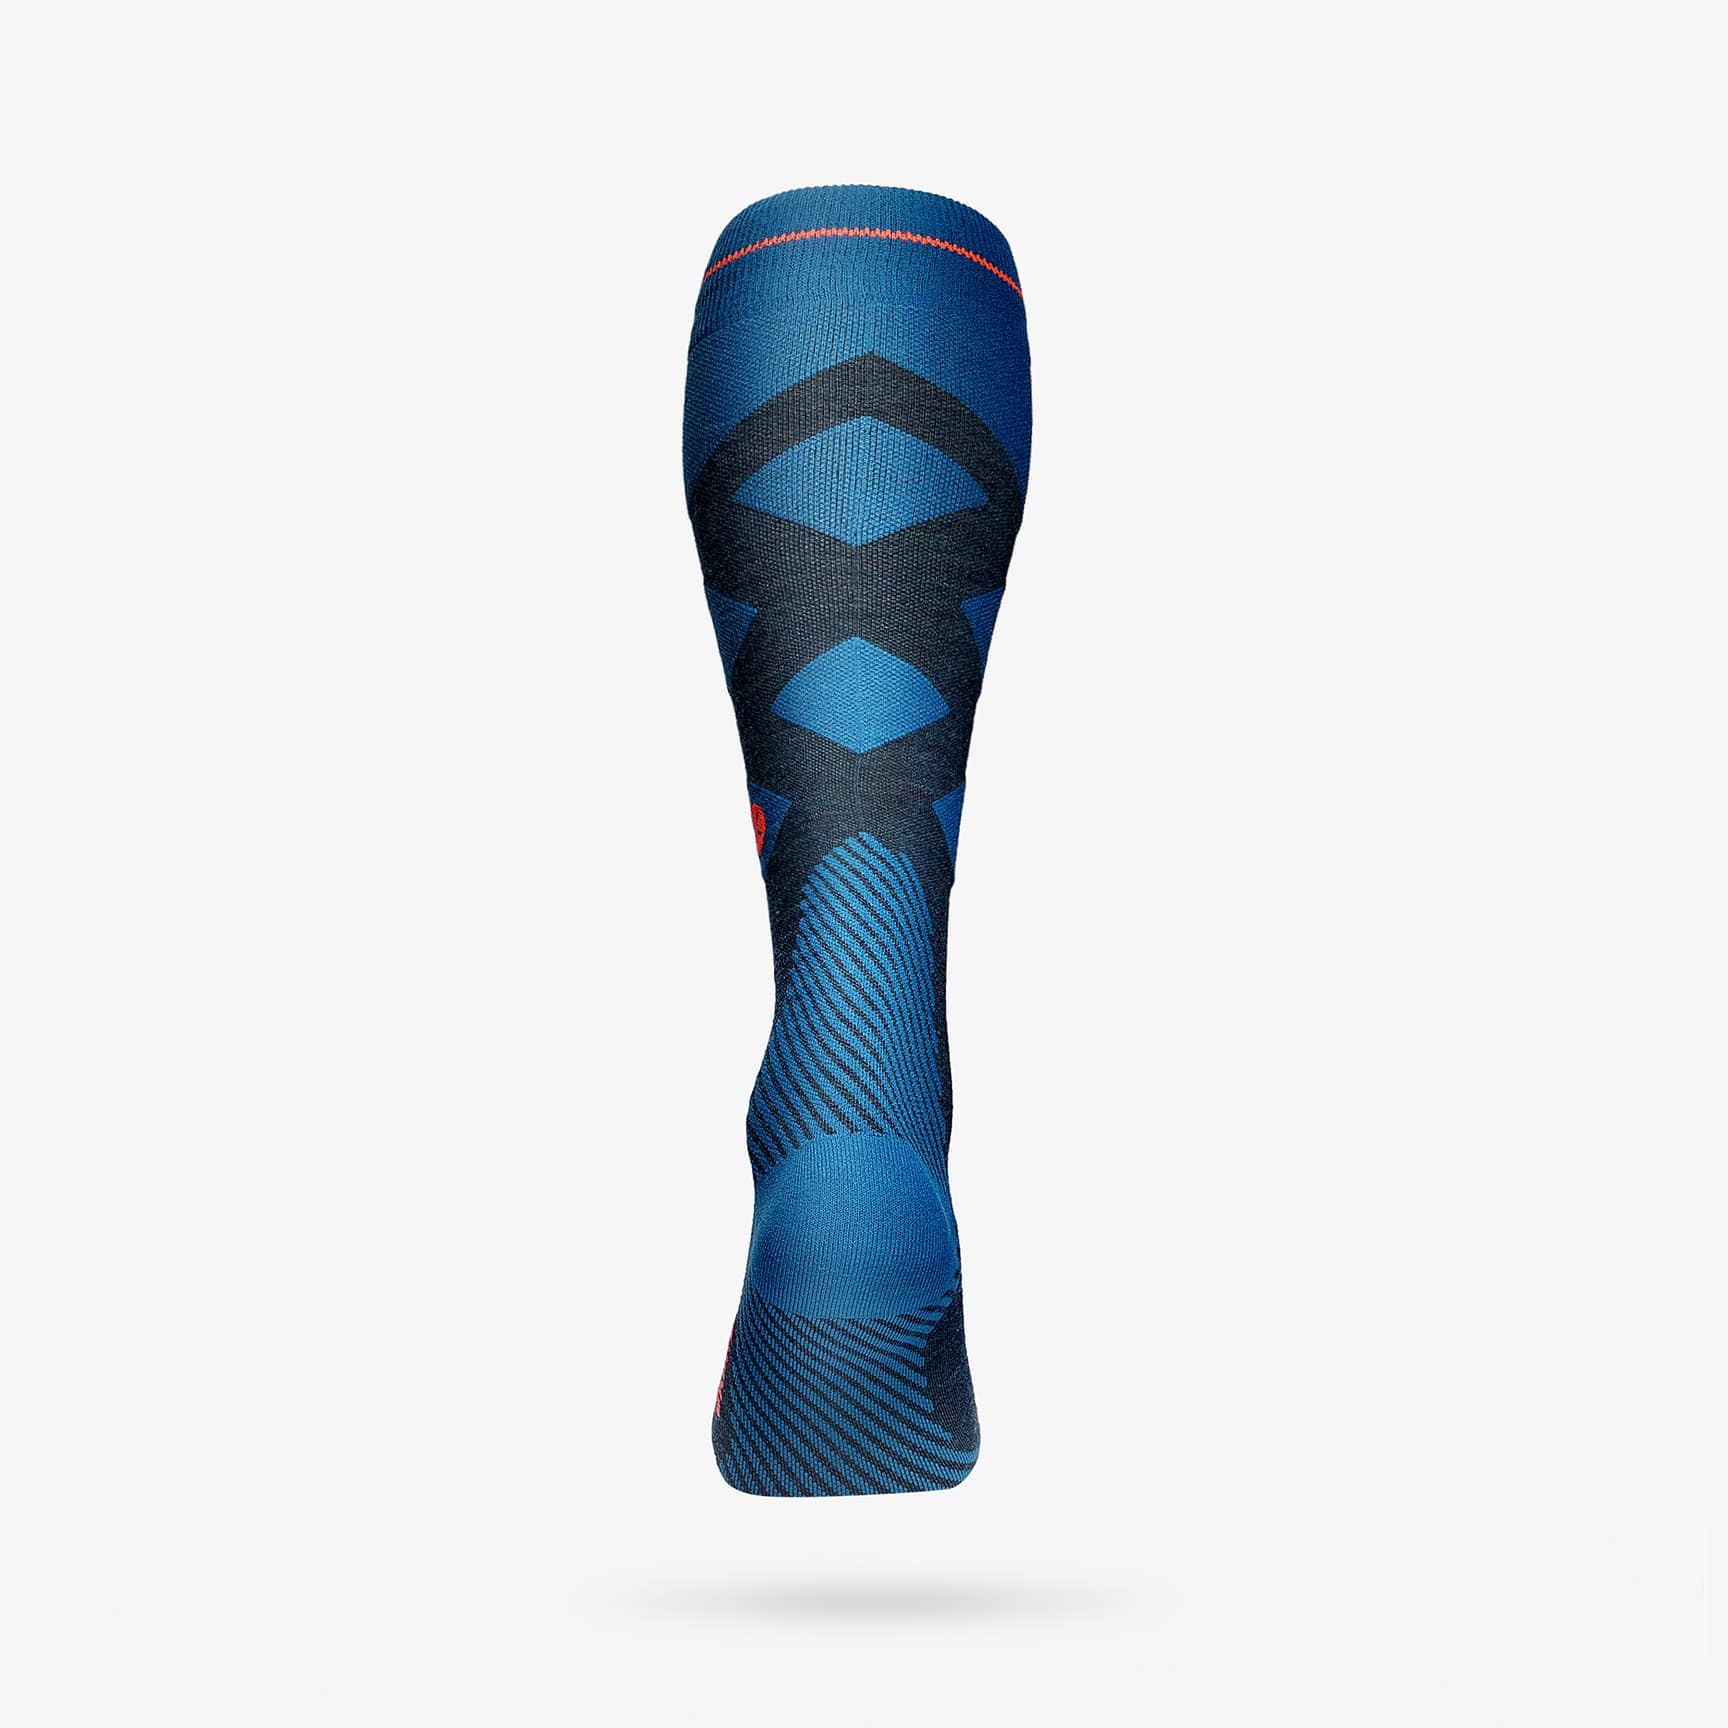 Keine kalten Füße Large, Grau // Blau 1 paar Kniestrümpfe Skistrümpfe mit Merinowolle Made in Italy Skisocken Herren STOX Skiing Socks mit Premium Kompression Technologie